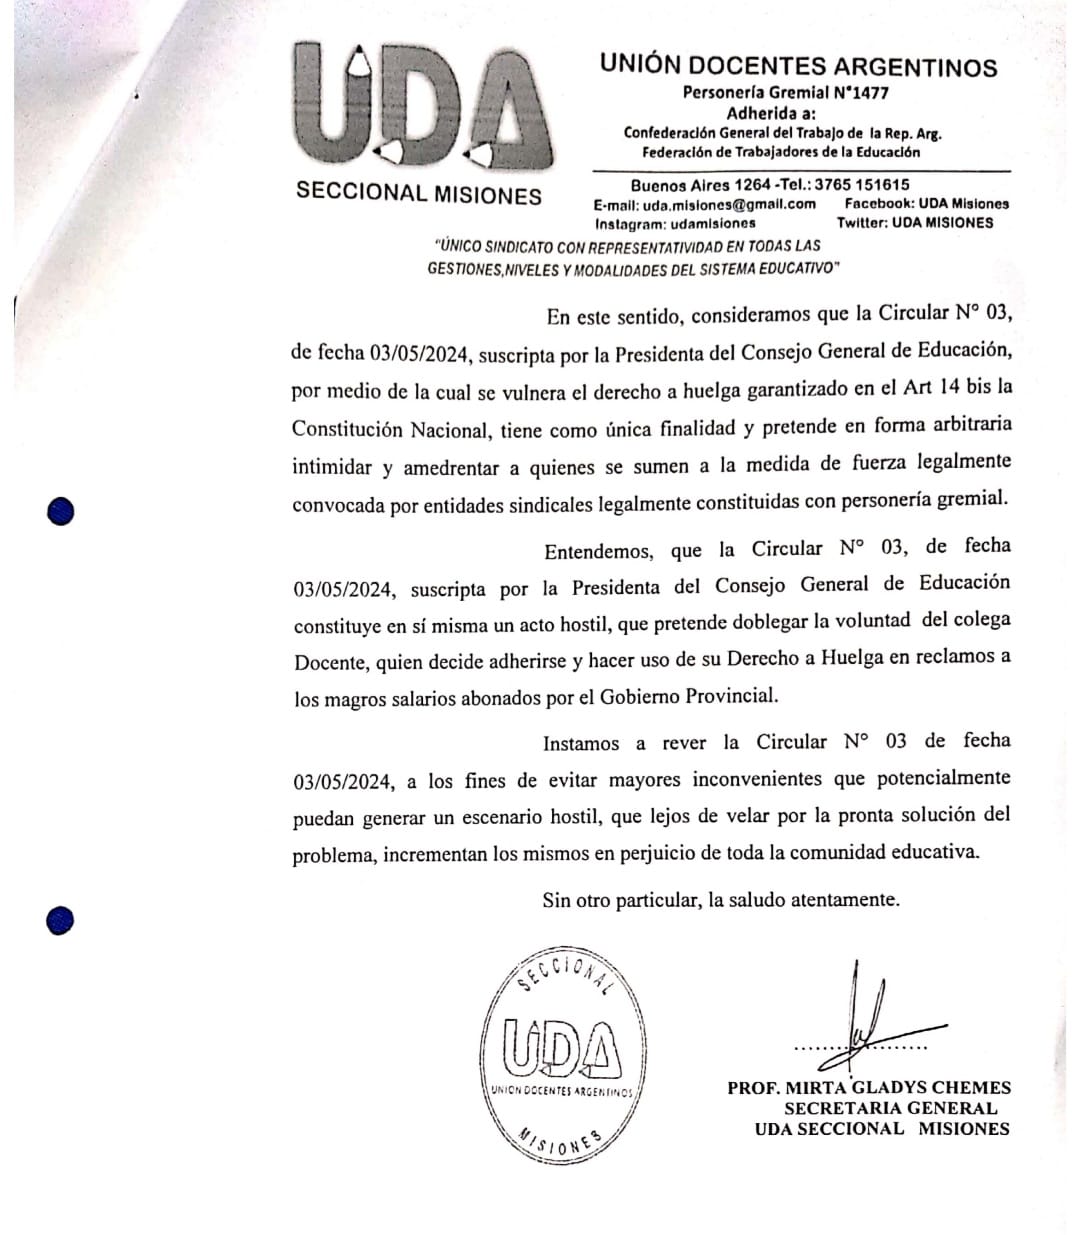 UDA Misiones rechaza Circular 03 del CGE porque "vulnera el derecho a huelga garantizado en el artículo 14 de la Constitución Nacional" imagen-6